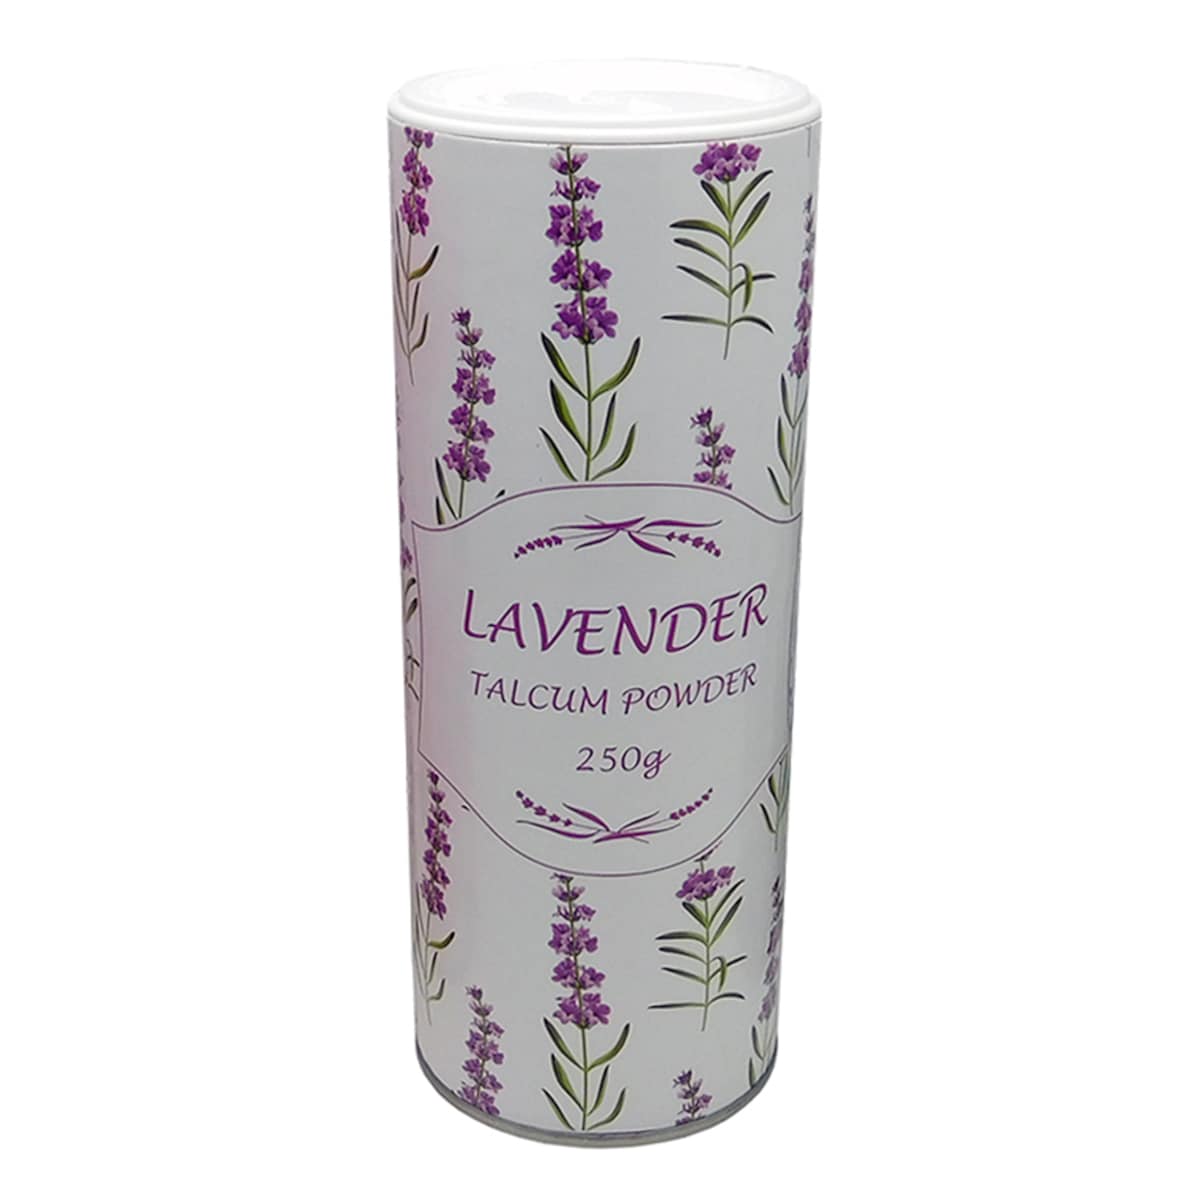 Lavender Talcum Powder 250g